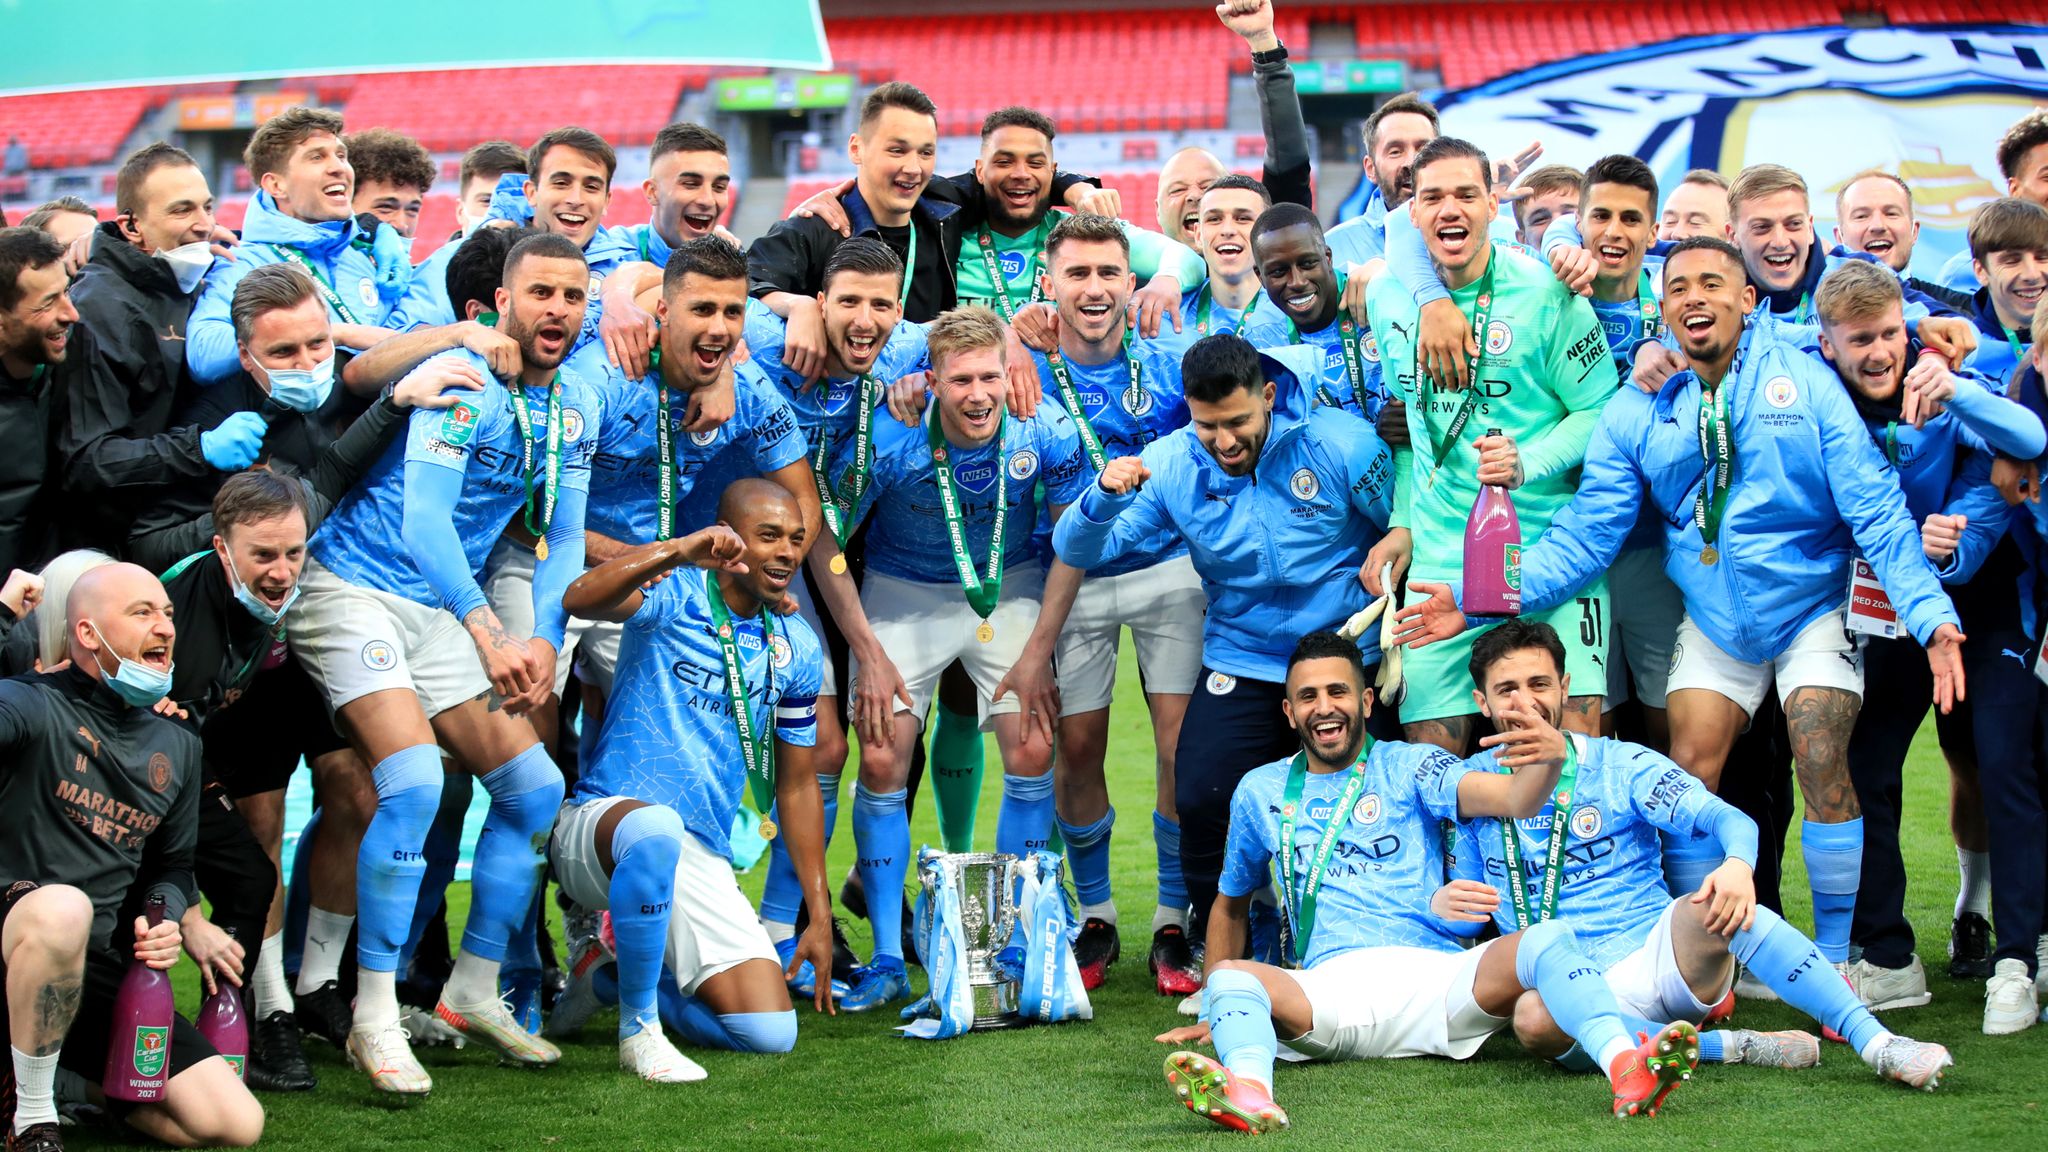 Manchester City has won the Premier League title USA Mirror